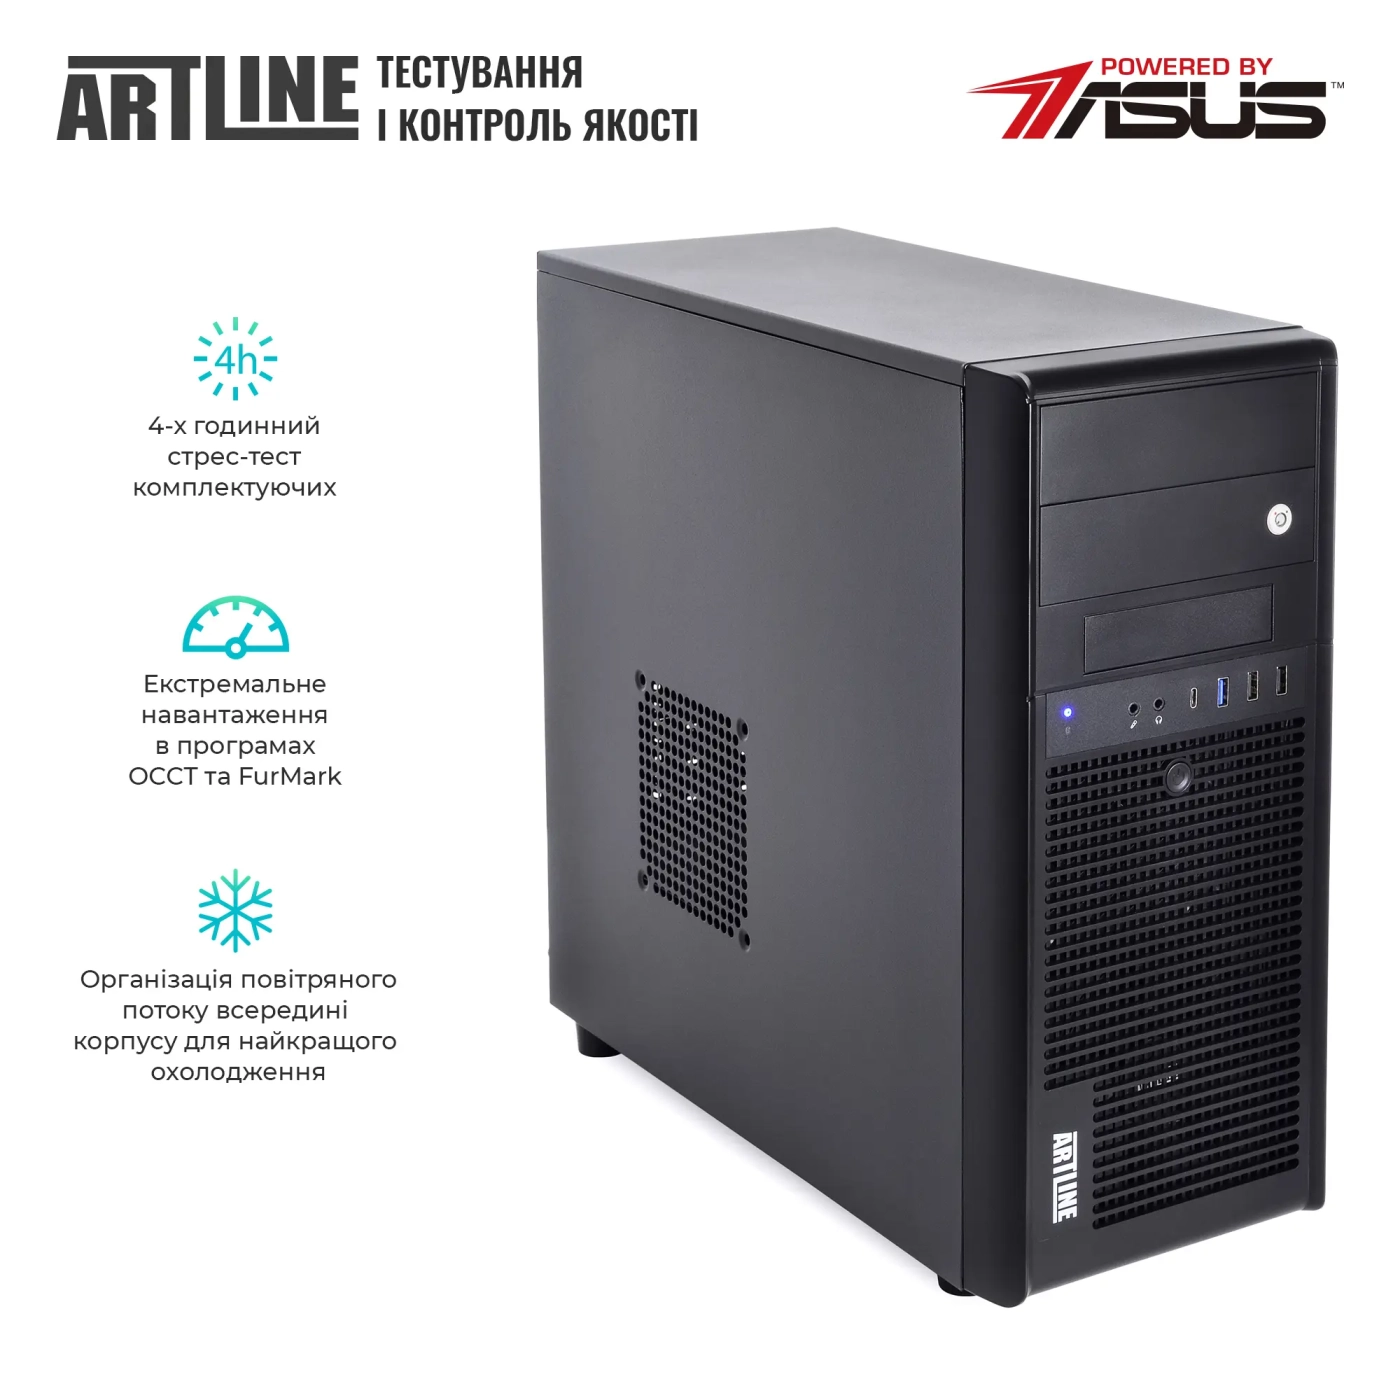 Купить Сервер ARTLINE Business T35 (T35v44) - фото 7